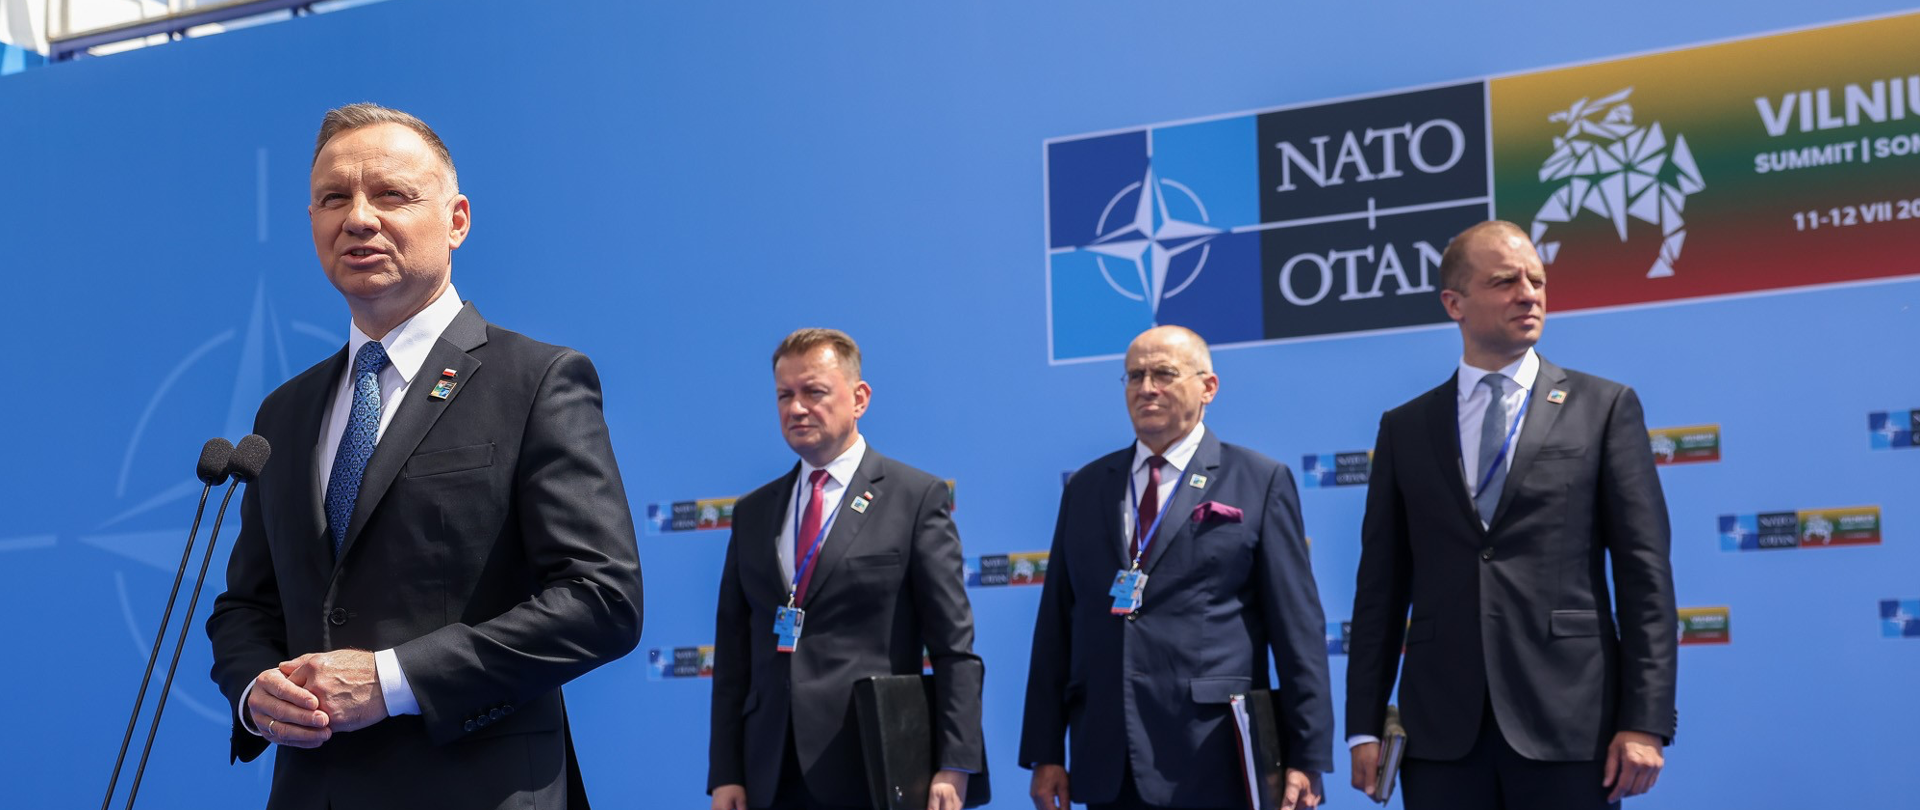 NATO summit in Vilnius